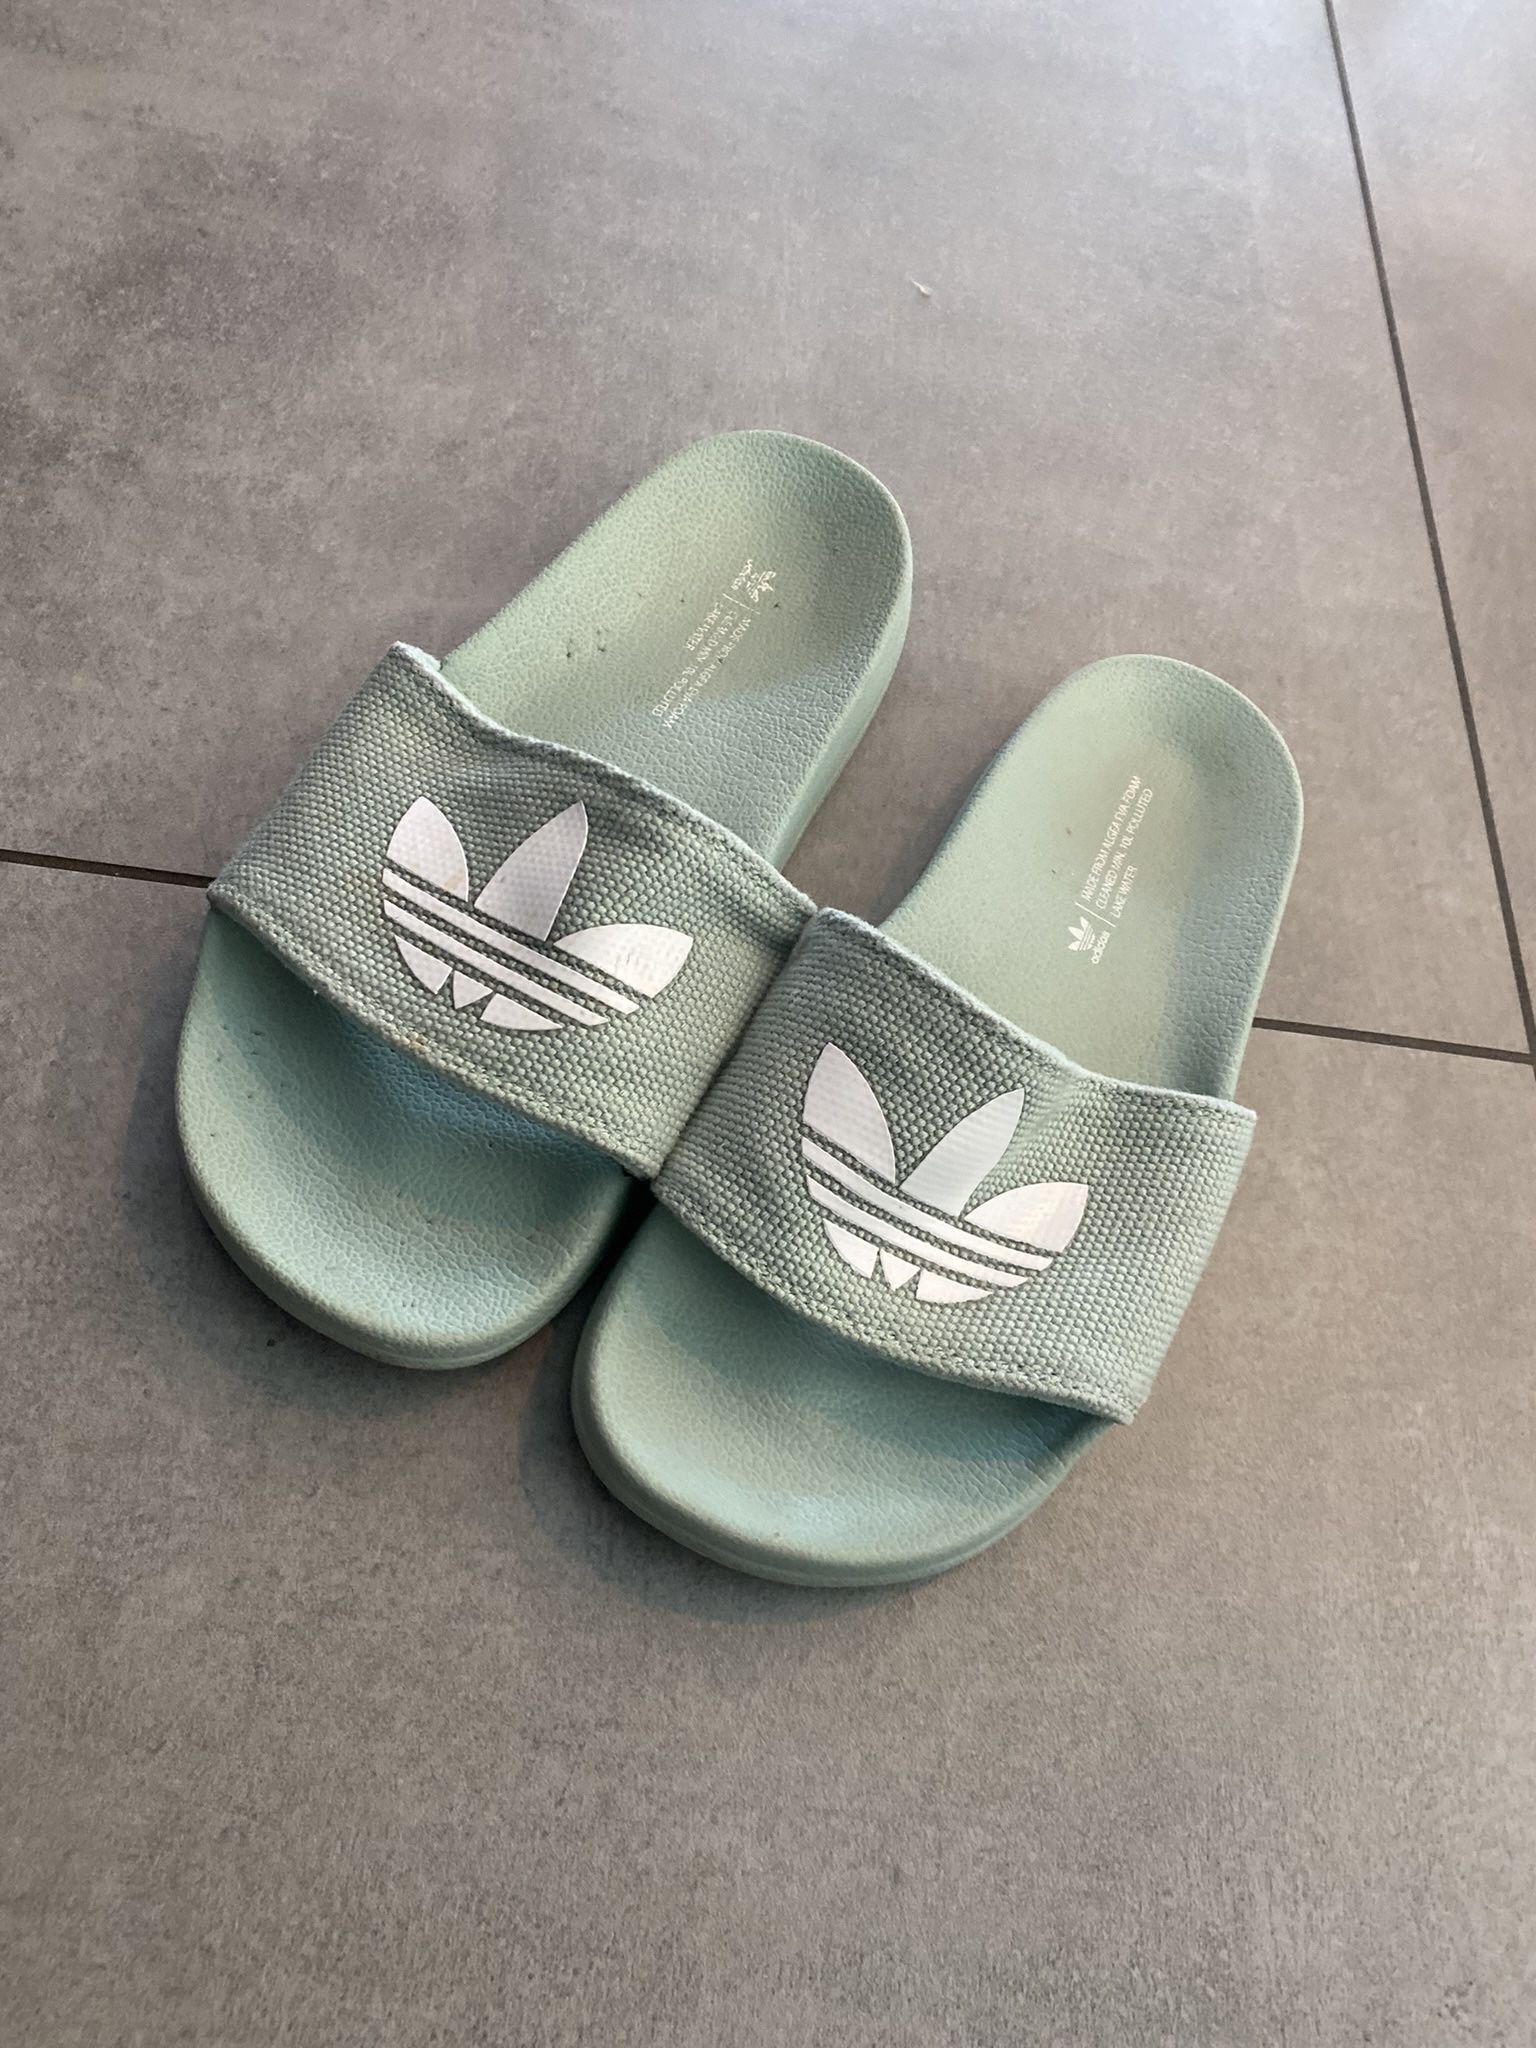 Authentic Adidas Sandals 